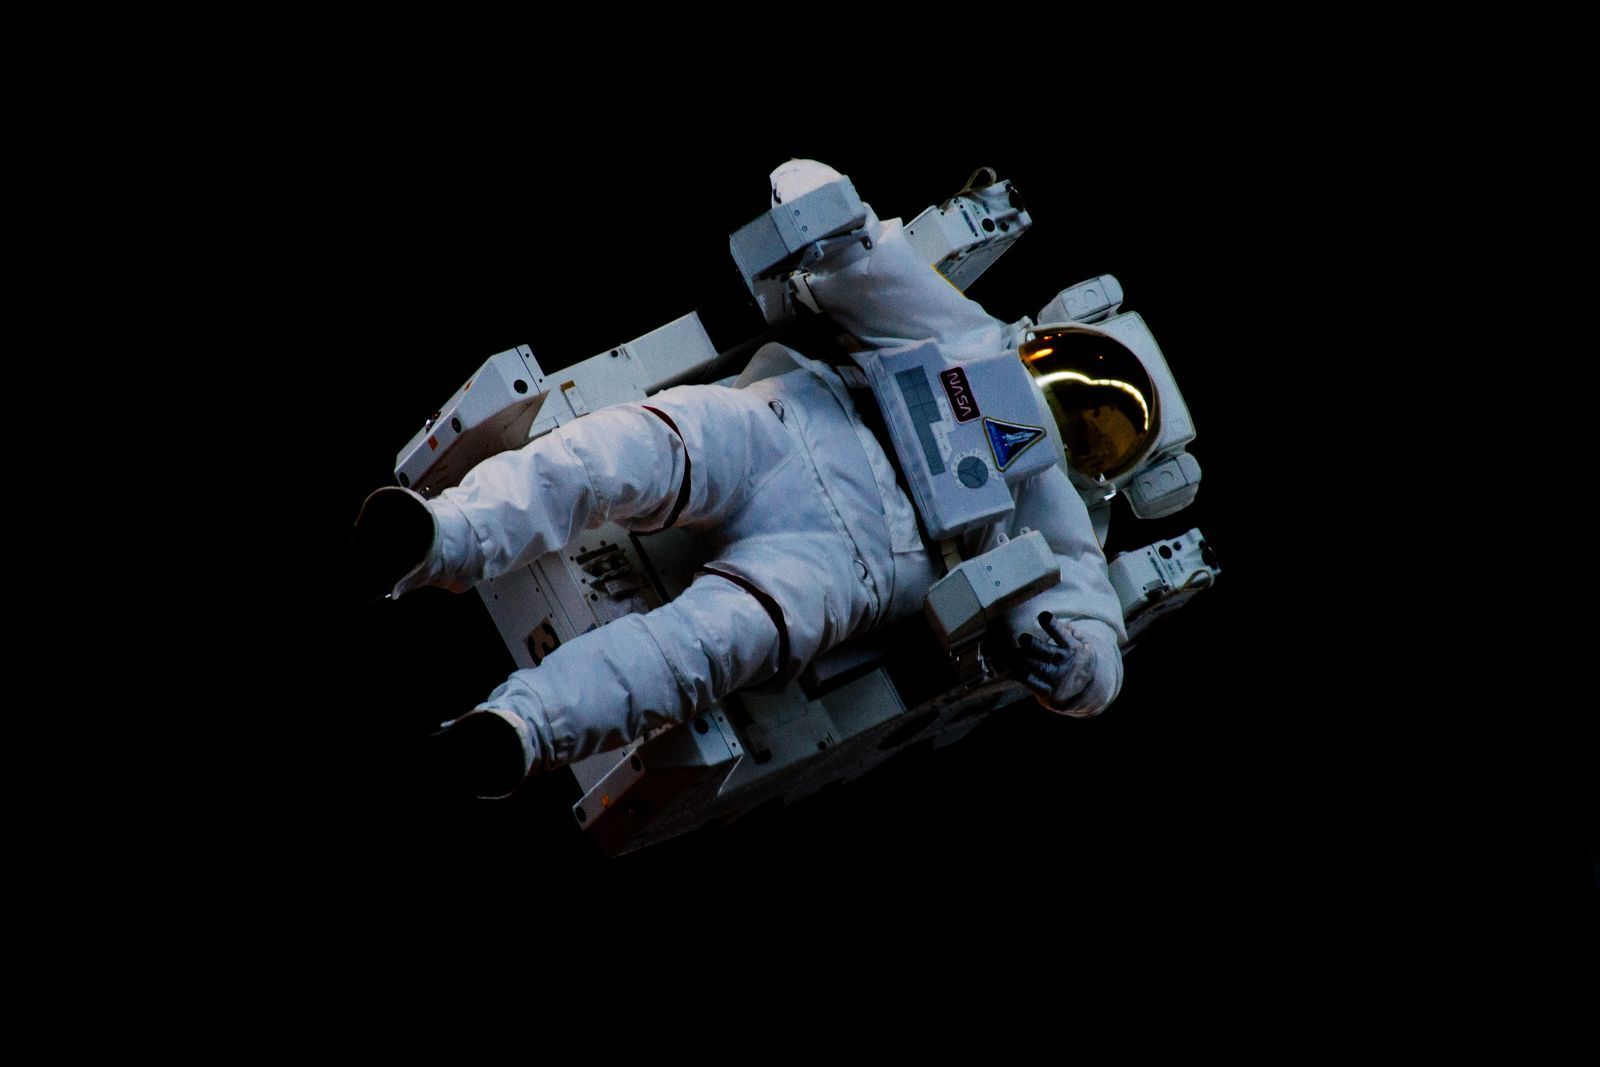 อวกาศ-นักบินอวกาศ-unsplash-Photo by Niketh Vellanki on Unsplash